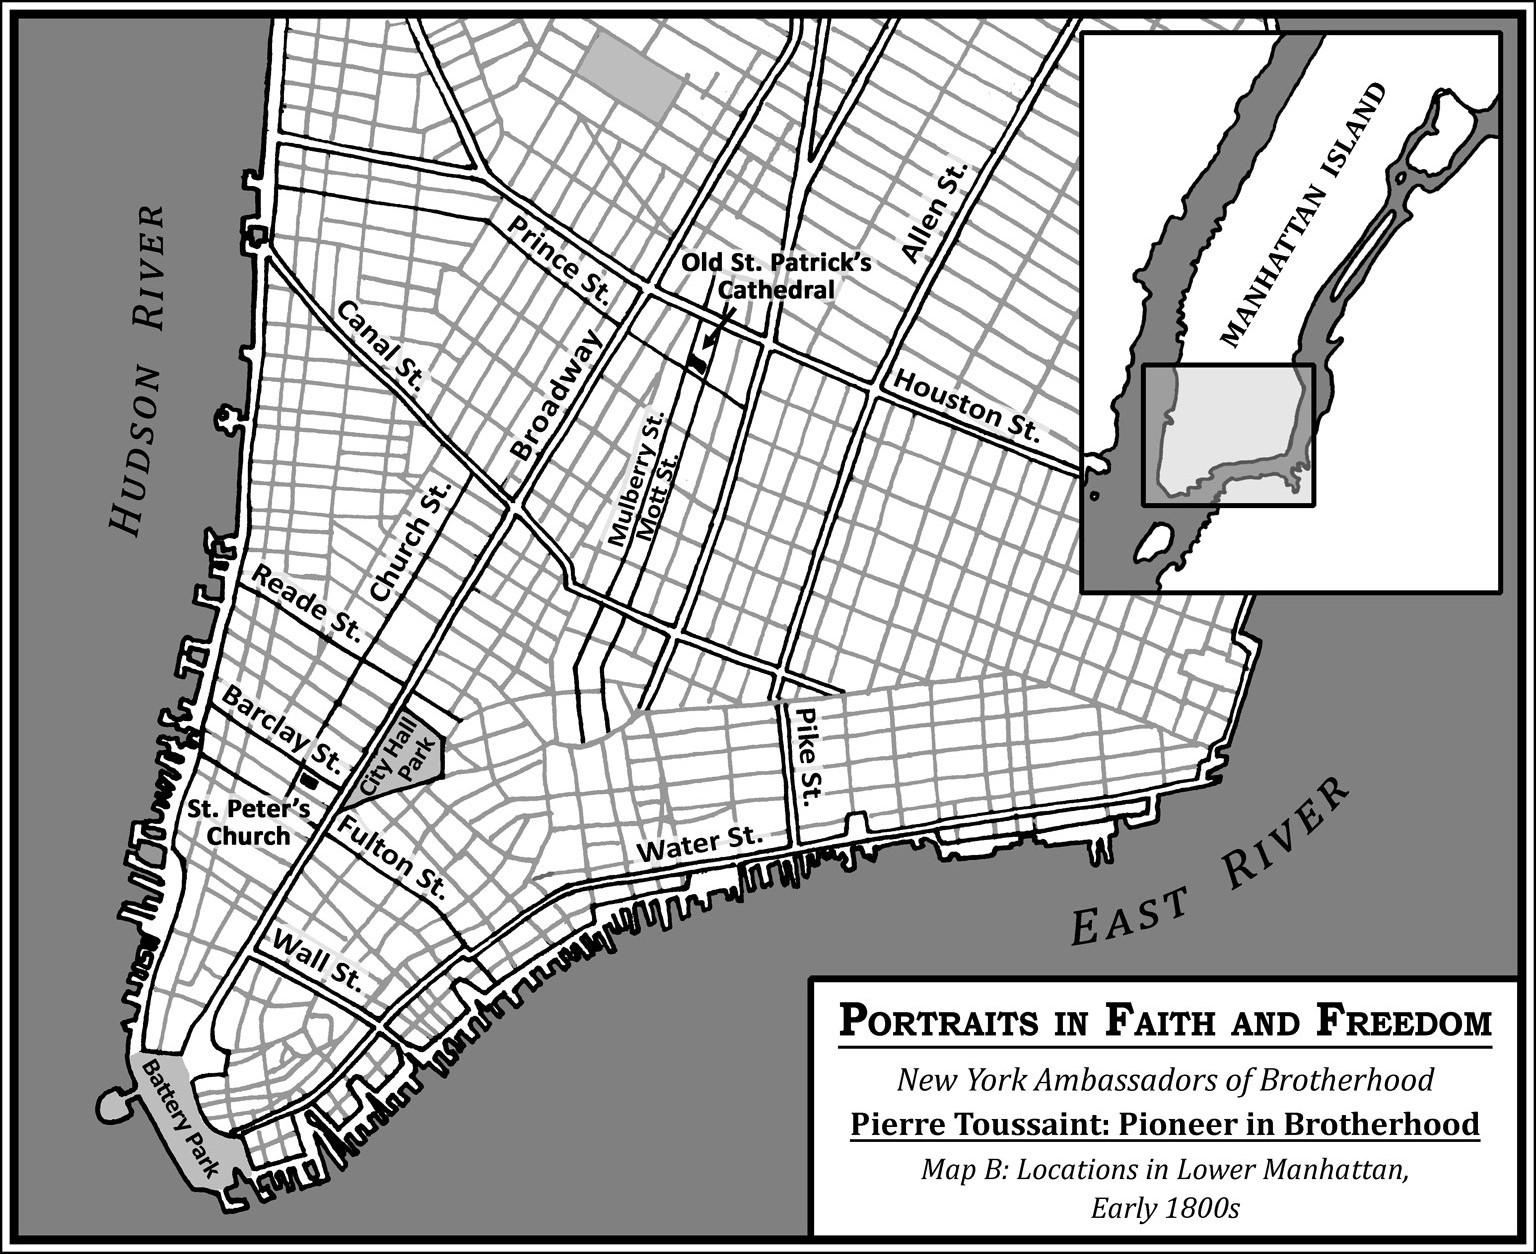 Pierre Toussaint Map B